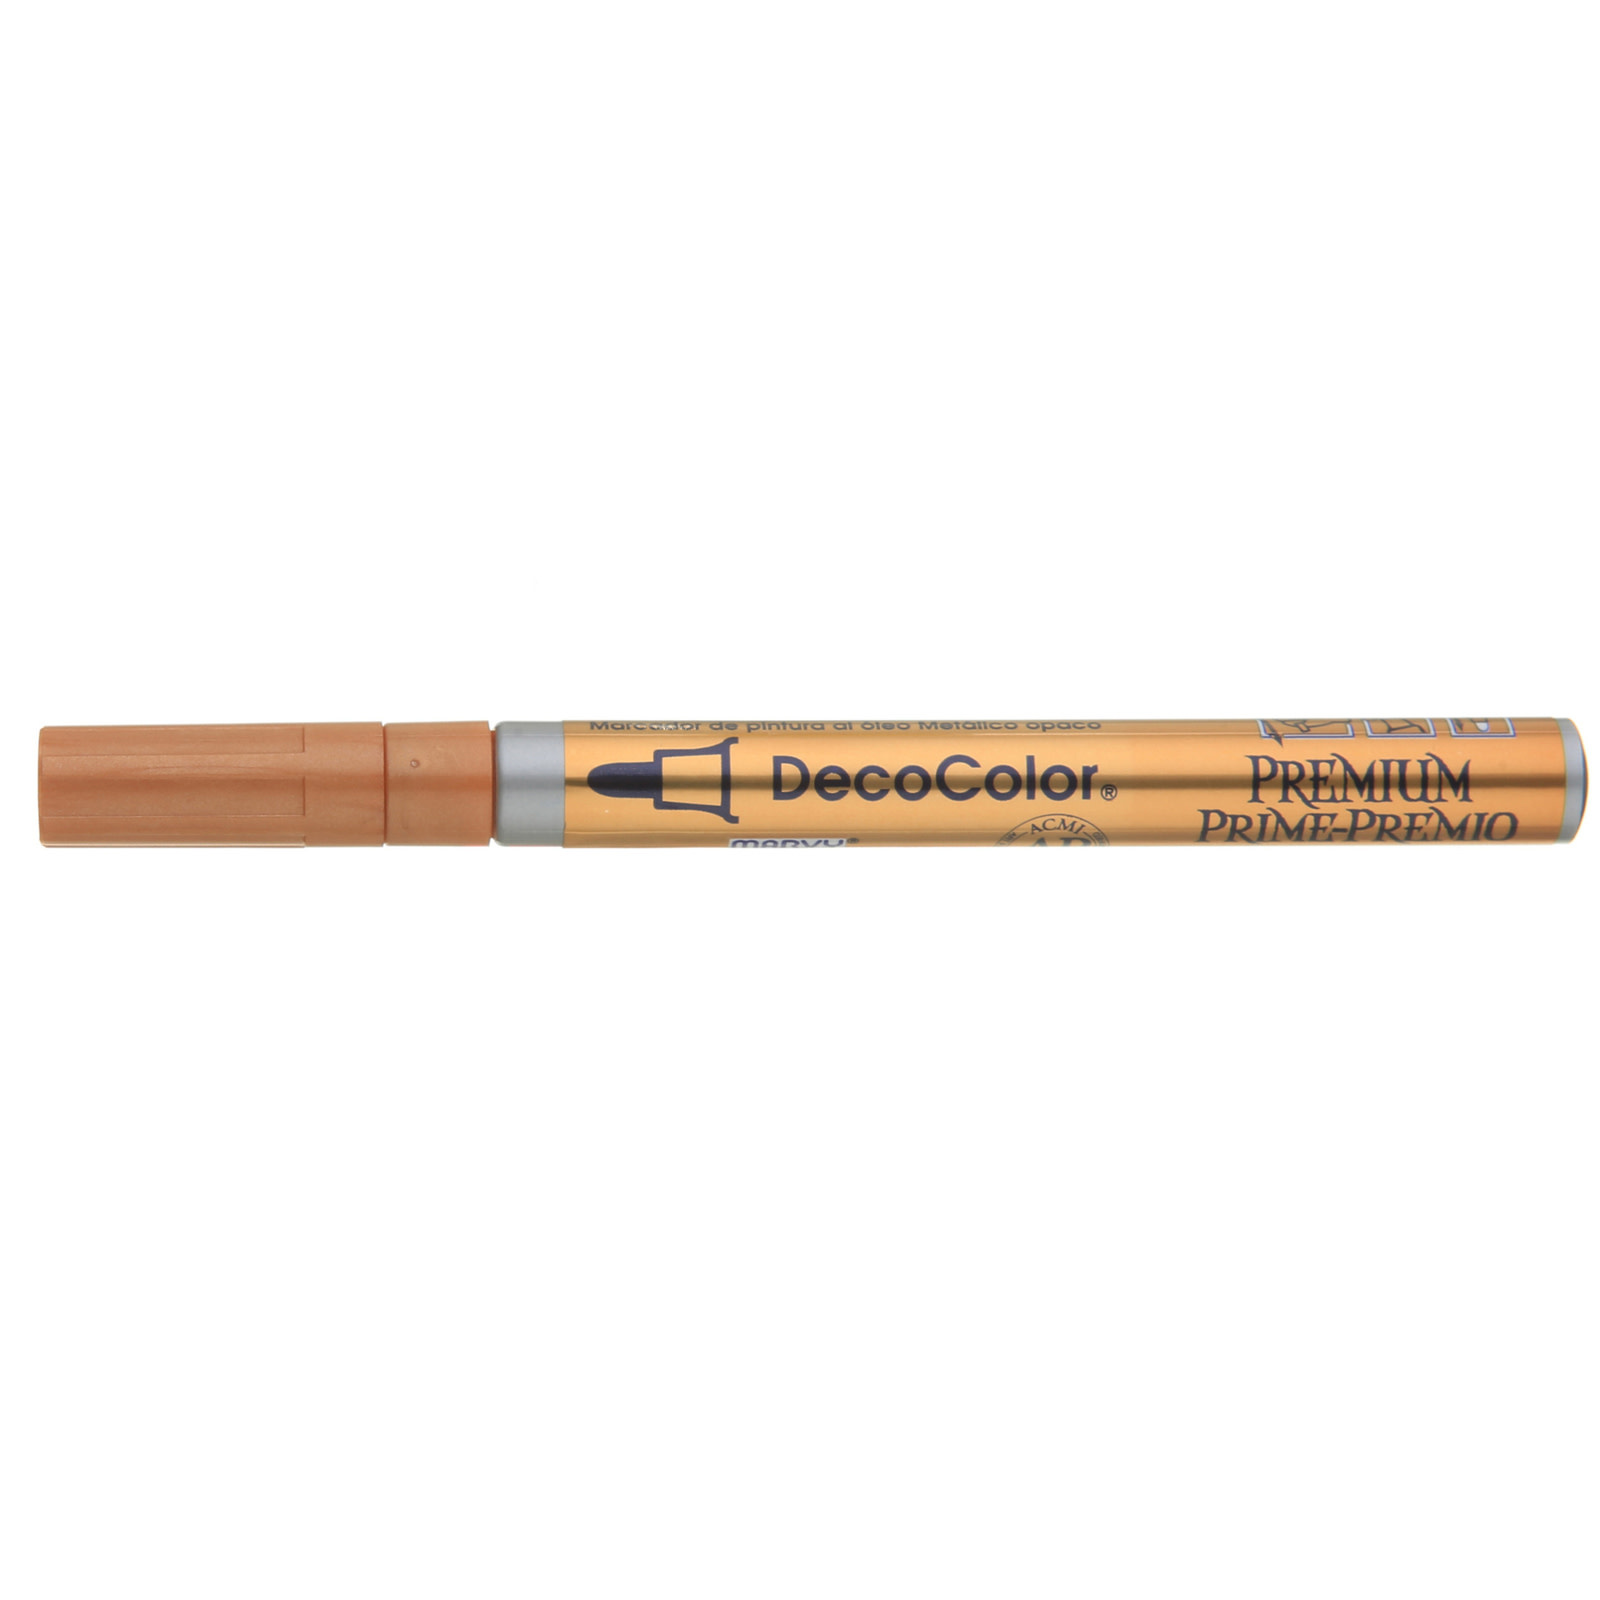 Uchida DecoColor Premium Paint Markers, 3mm Fine Tip, Copper